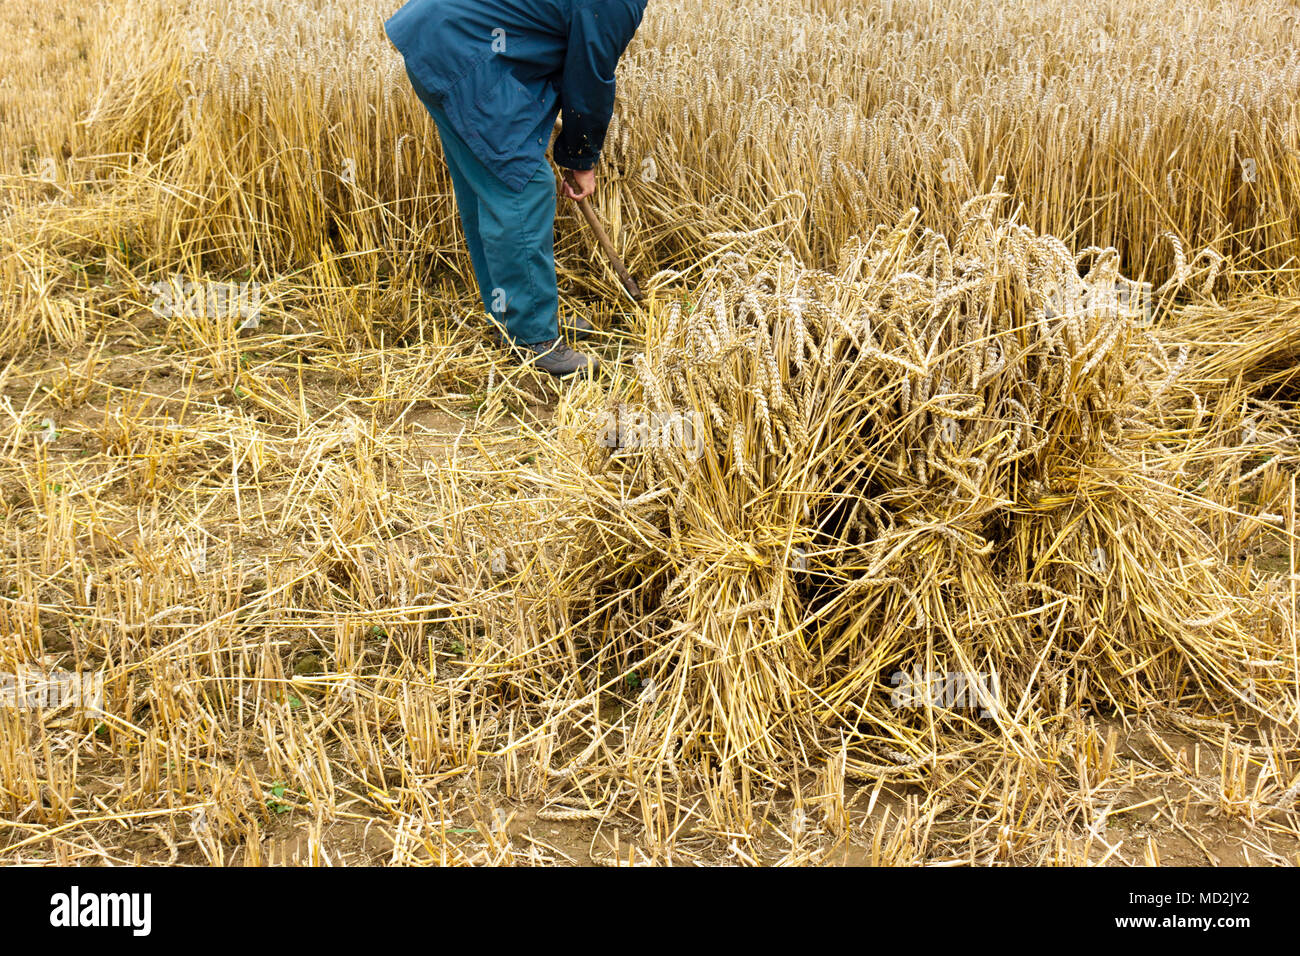 Farmer harvesting in hay field Stock Photo